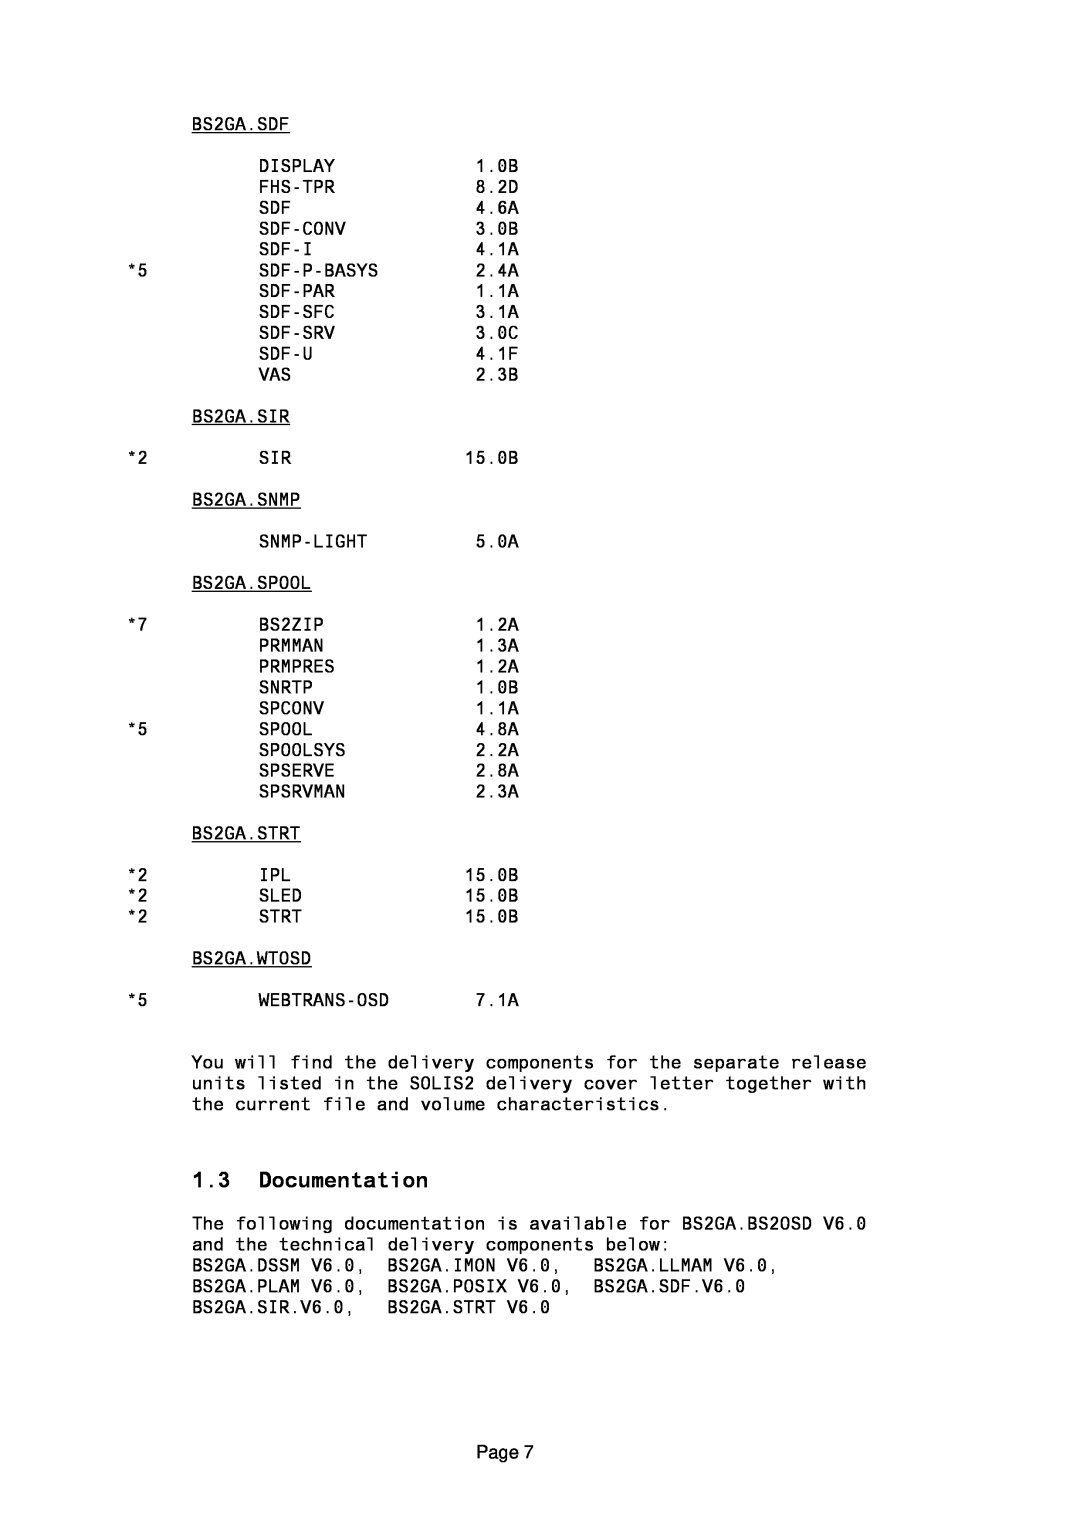 Fujitsu BS2OSD manual Documentation 